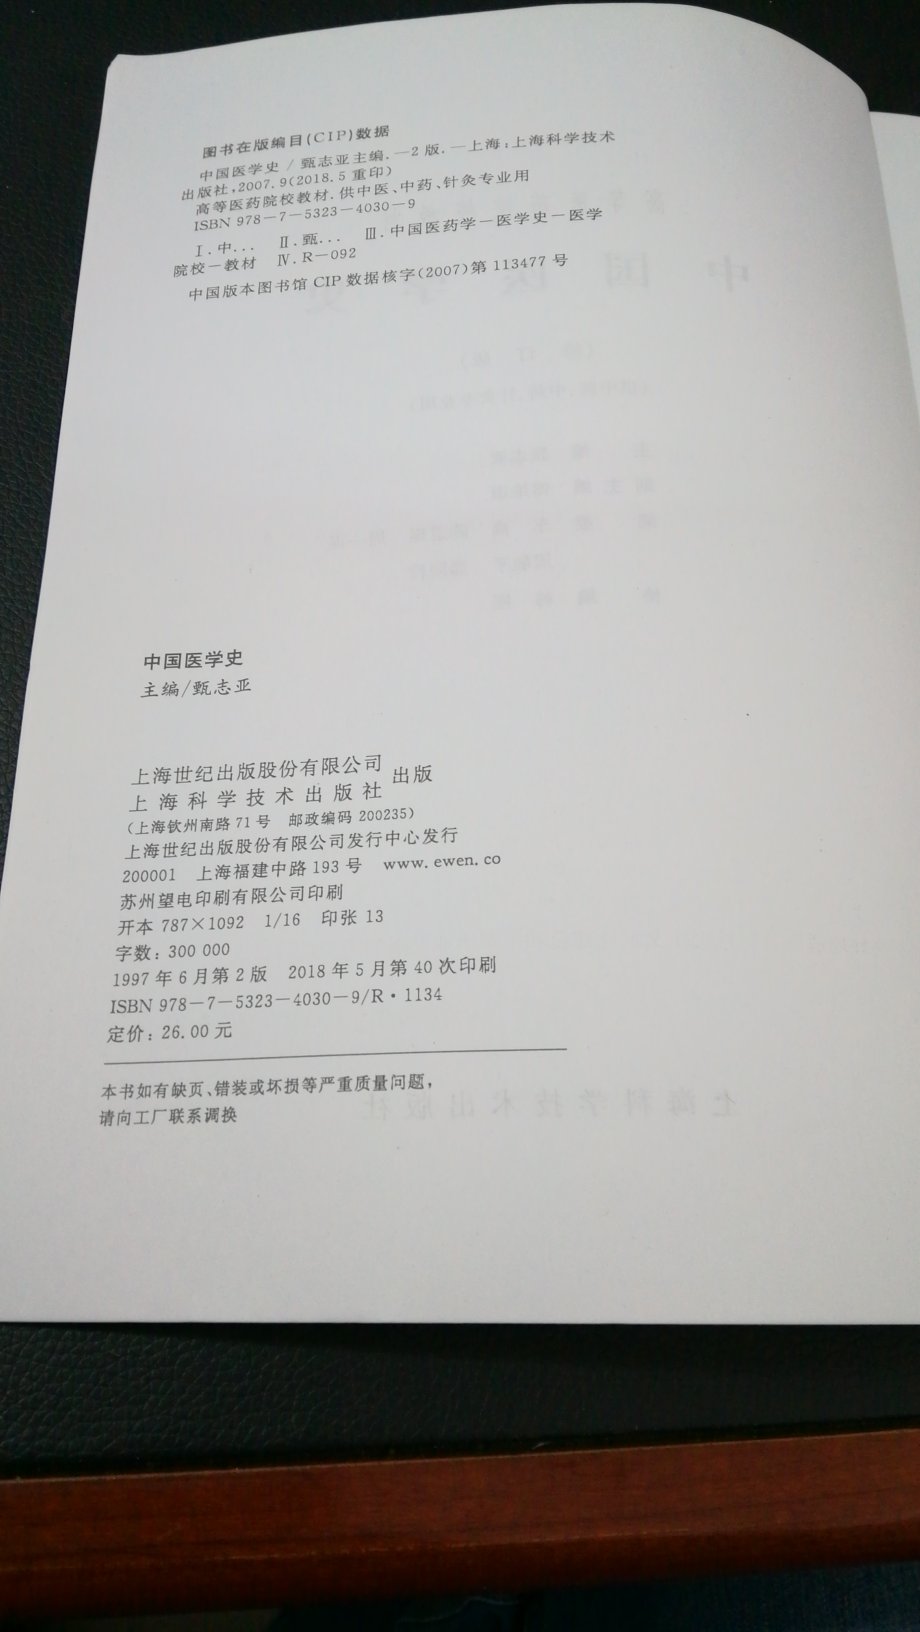 《中国医学史》1997年修订版，资料截止1996年。排版紧凑，字体较小。